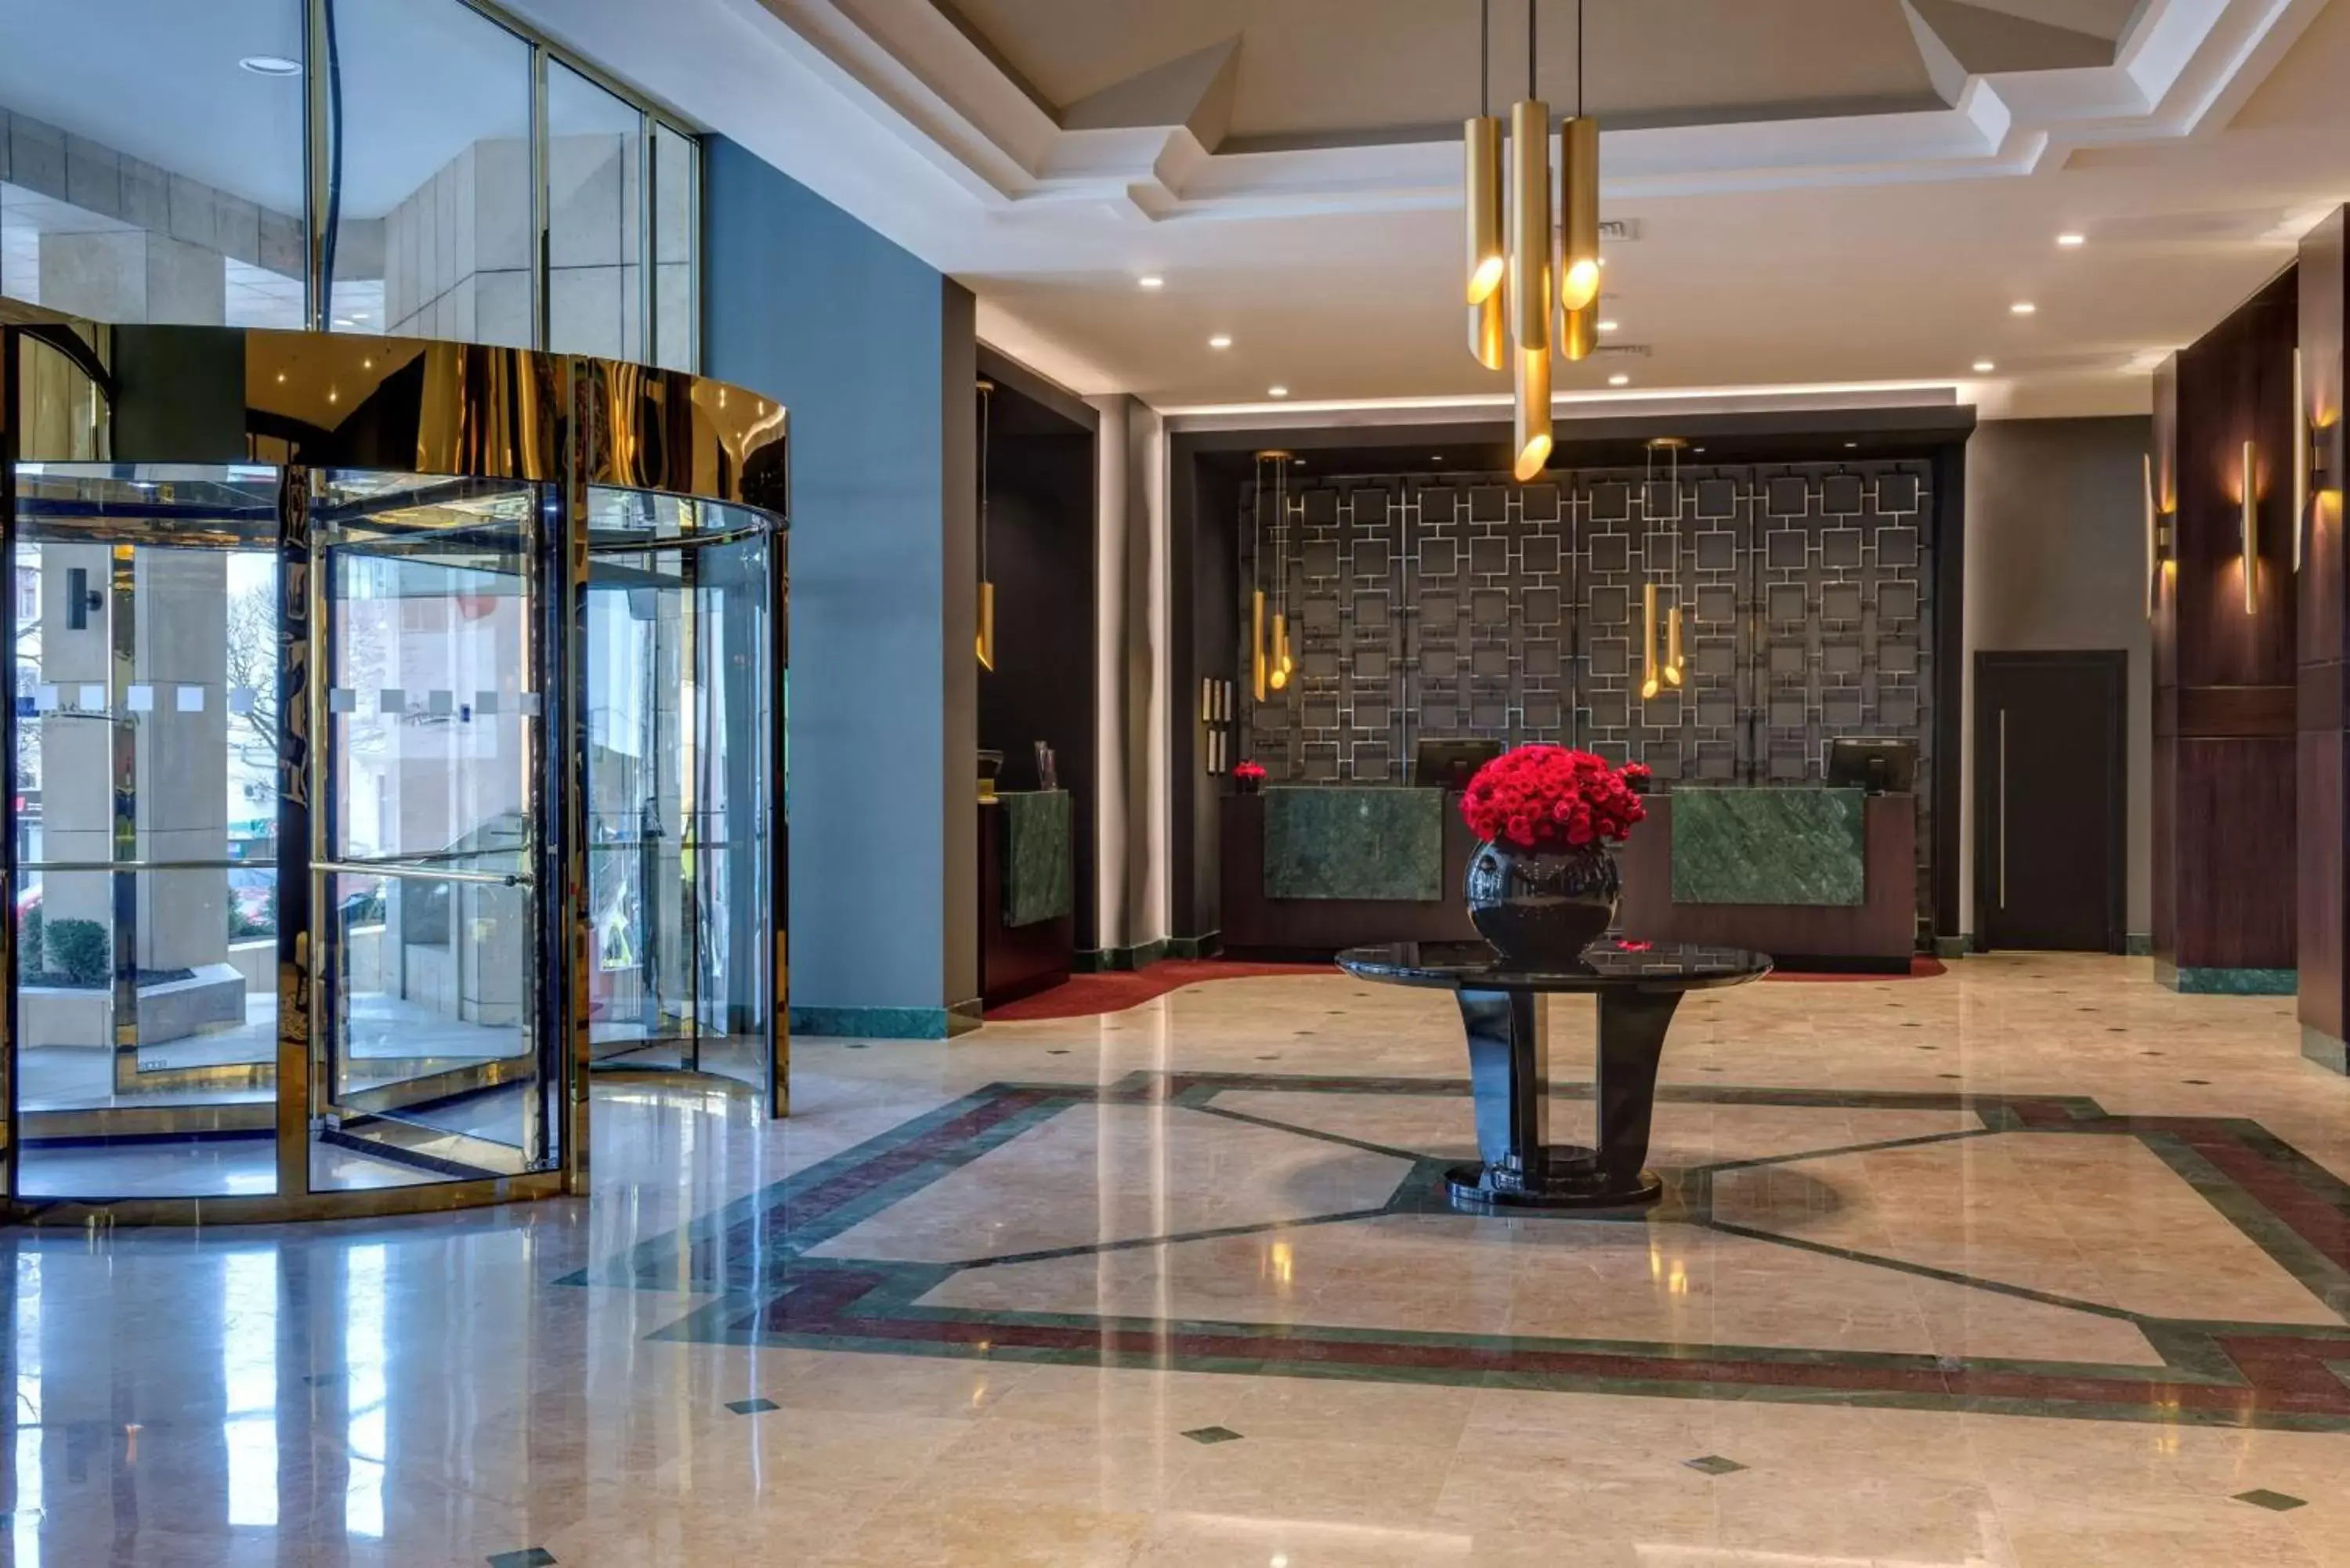 Lobby or reception in Radisson Blu Leogrand Hotel